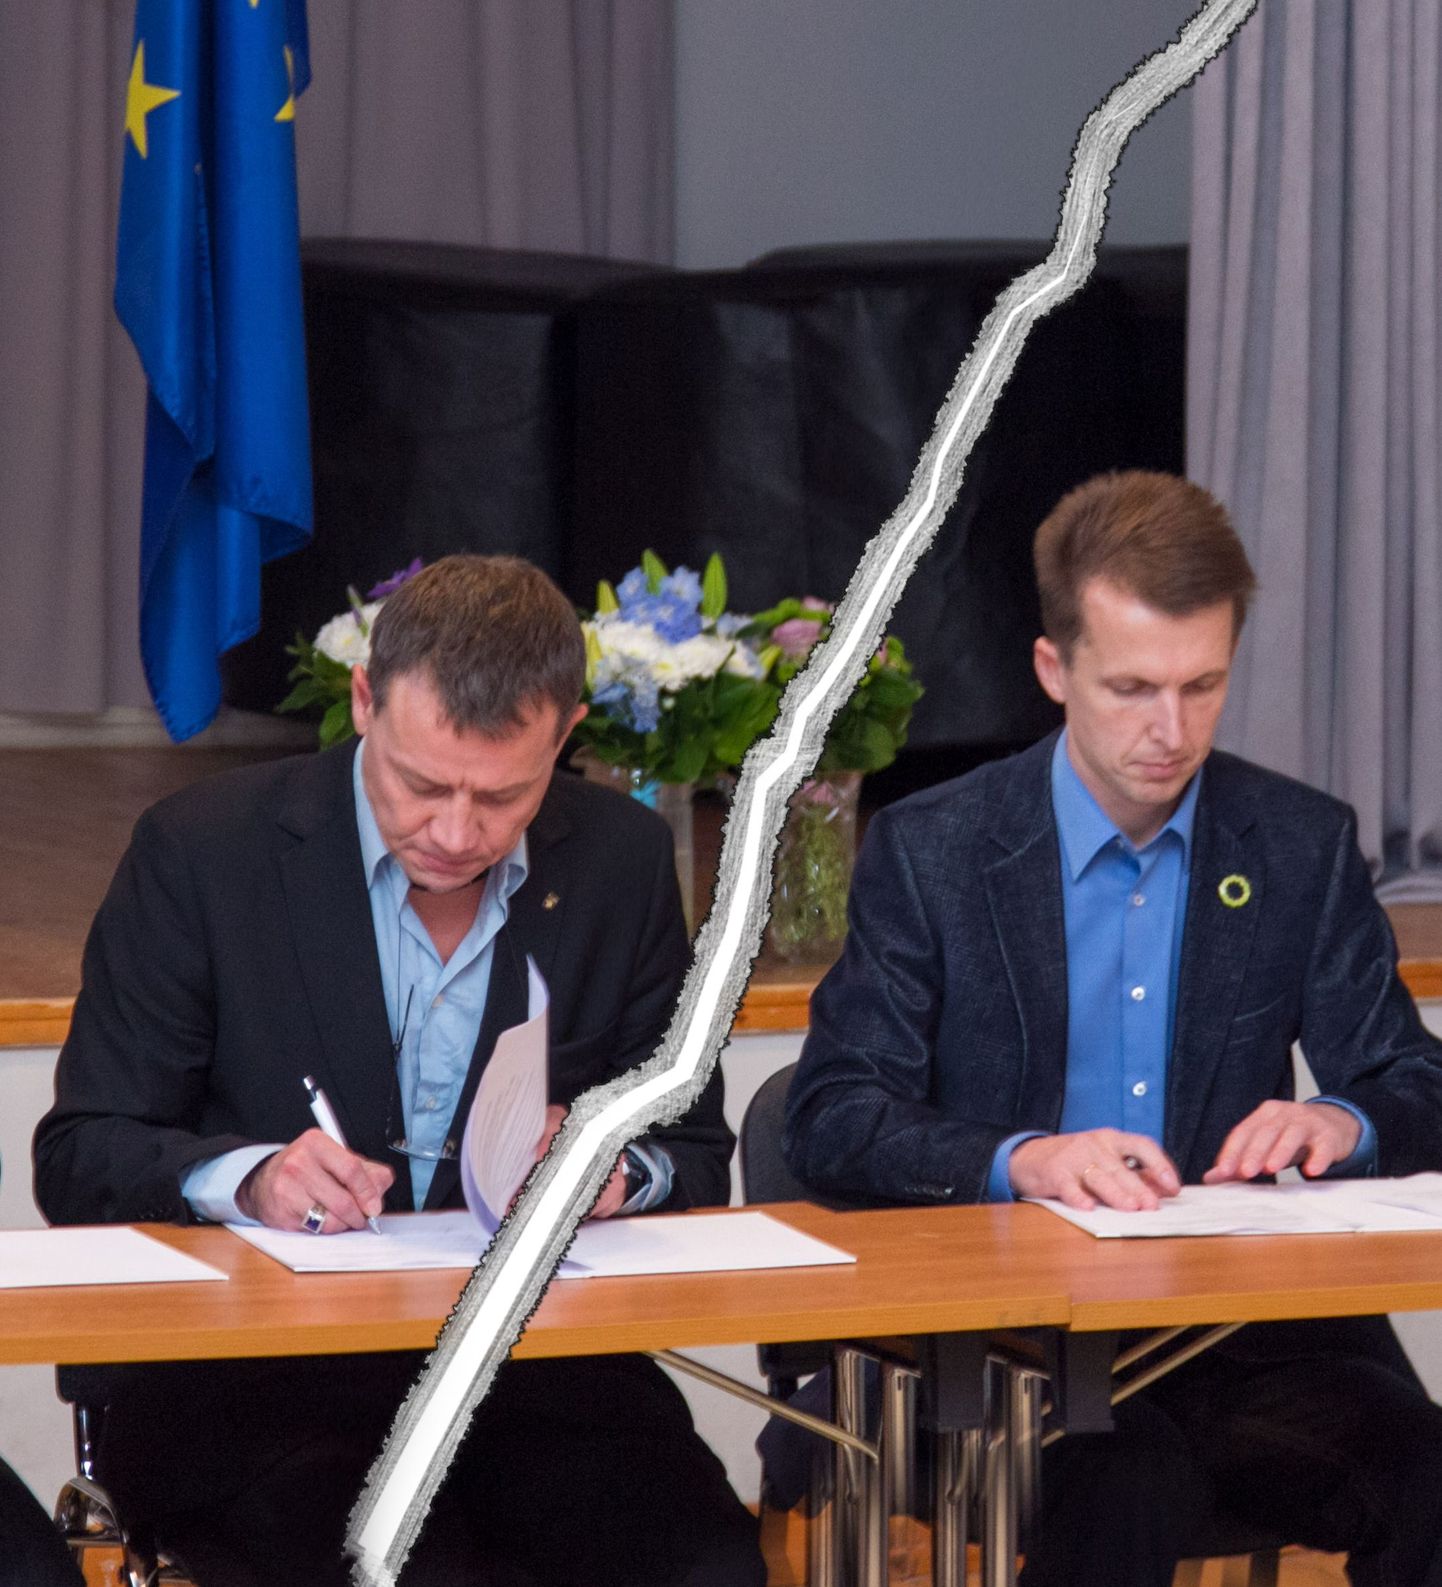 Novembris sõlmisid Jaanus Raidal (vasakul) valimisliidust Otepää ja Kuldar Veere liidust Otepää Kodanik koostööleppe valla juhtimiseks. Kolmas osapool oli Urmas Kuldmaa IRList.